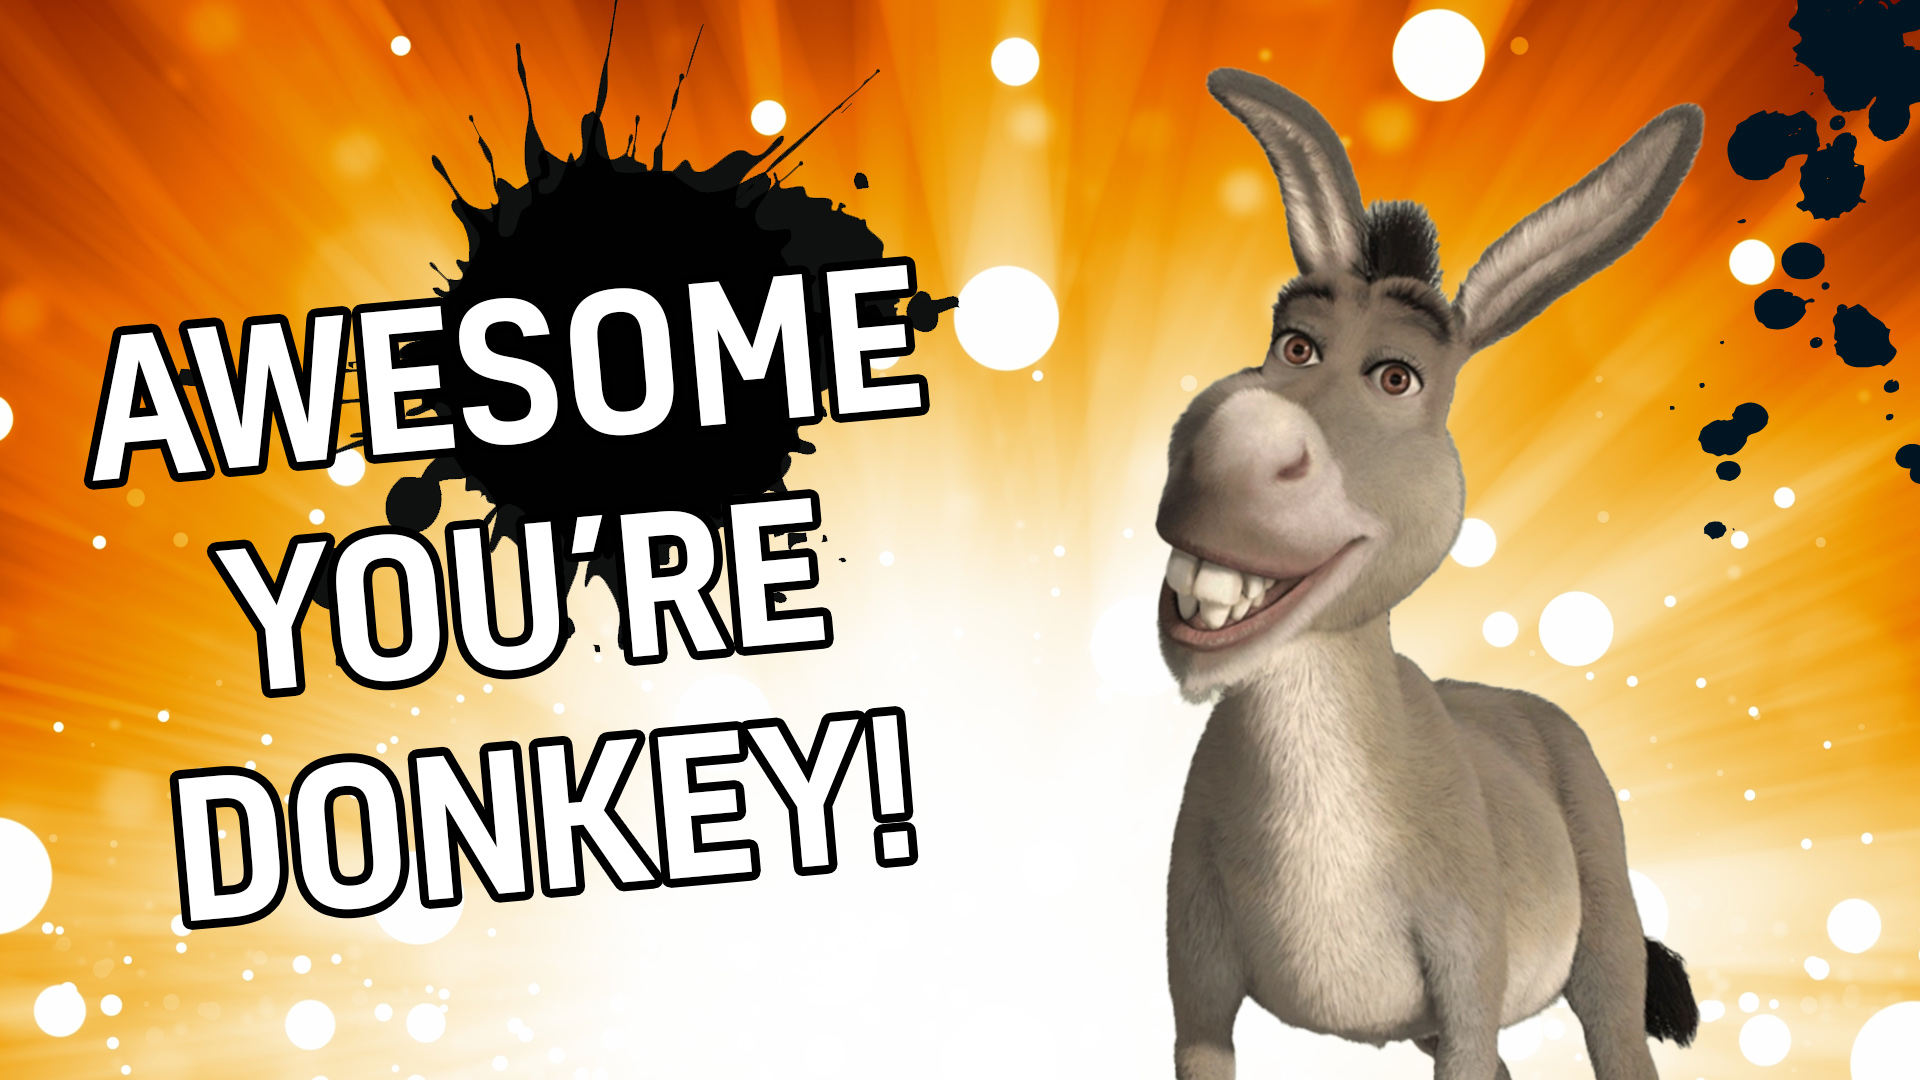 Result: Donkey